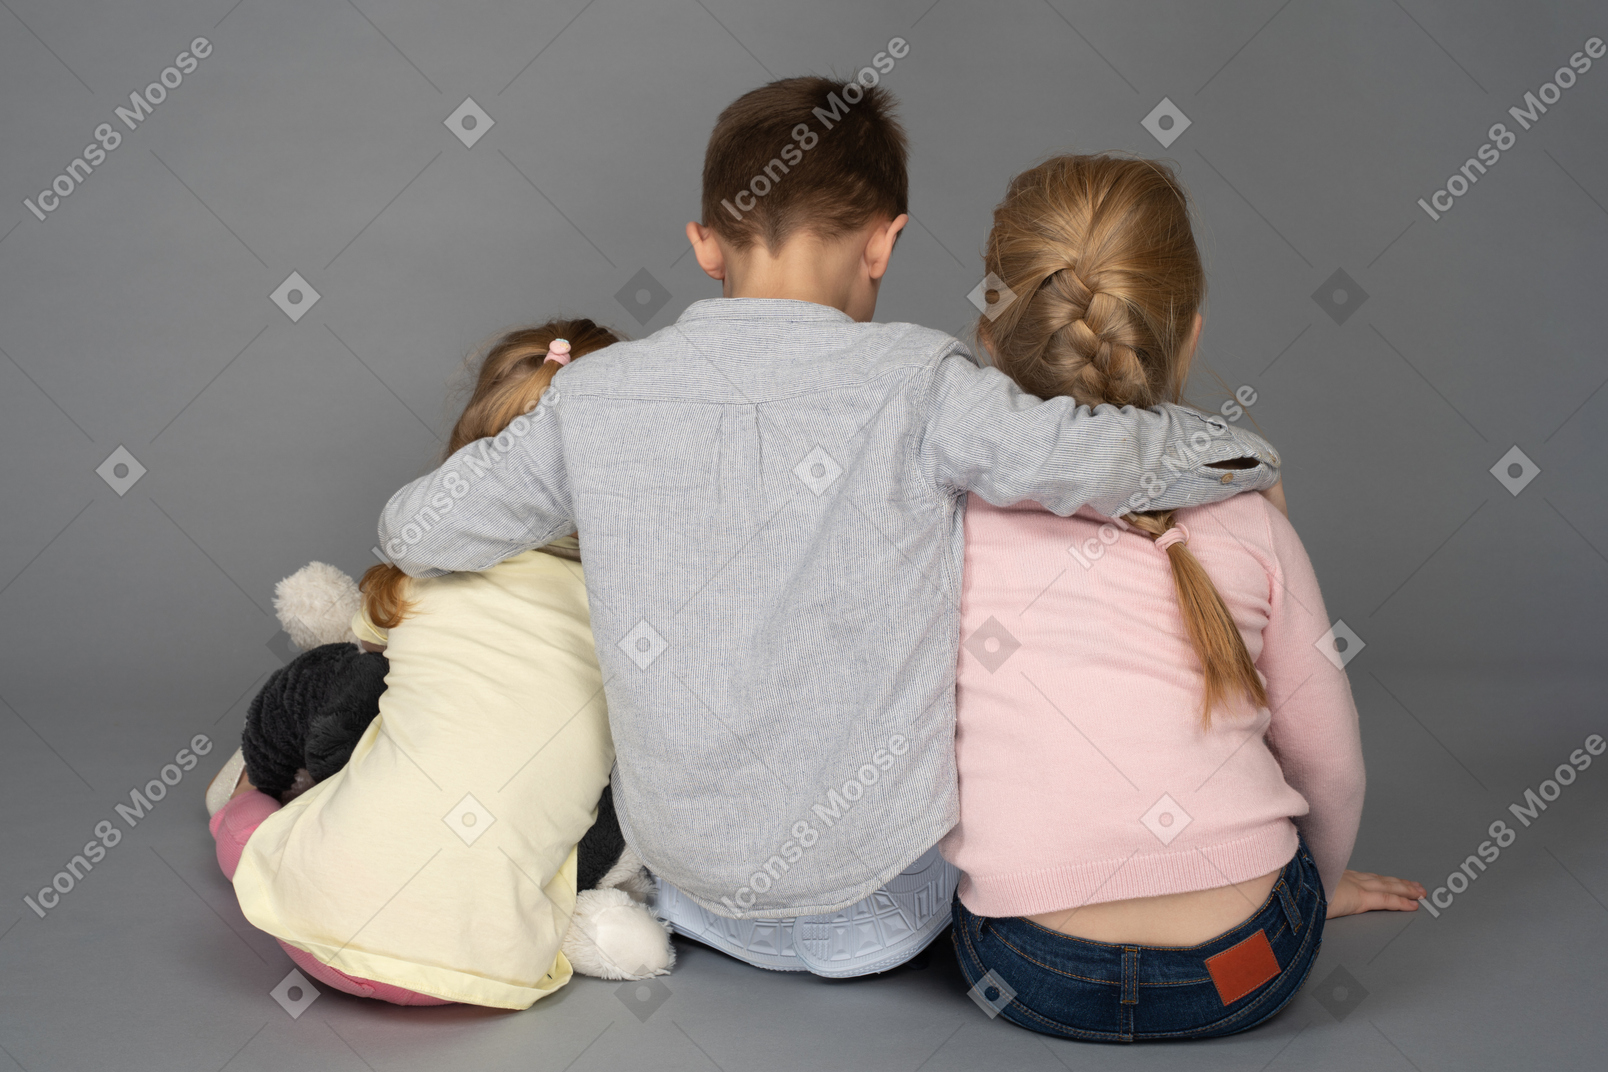 Ragazzo che abbraccia due bambine torna alla telecamera